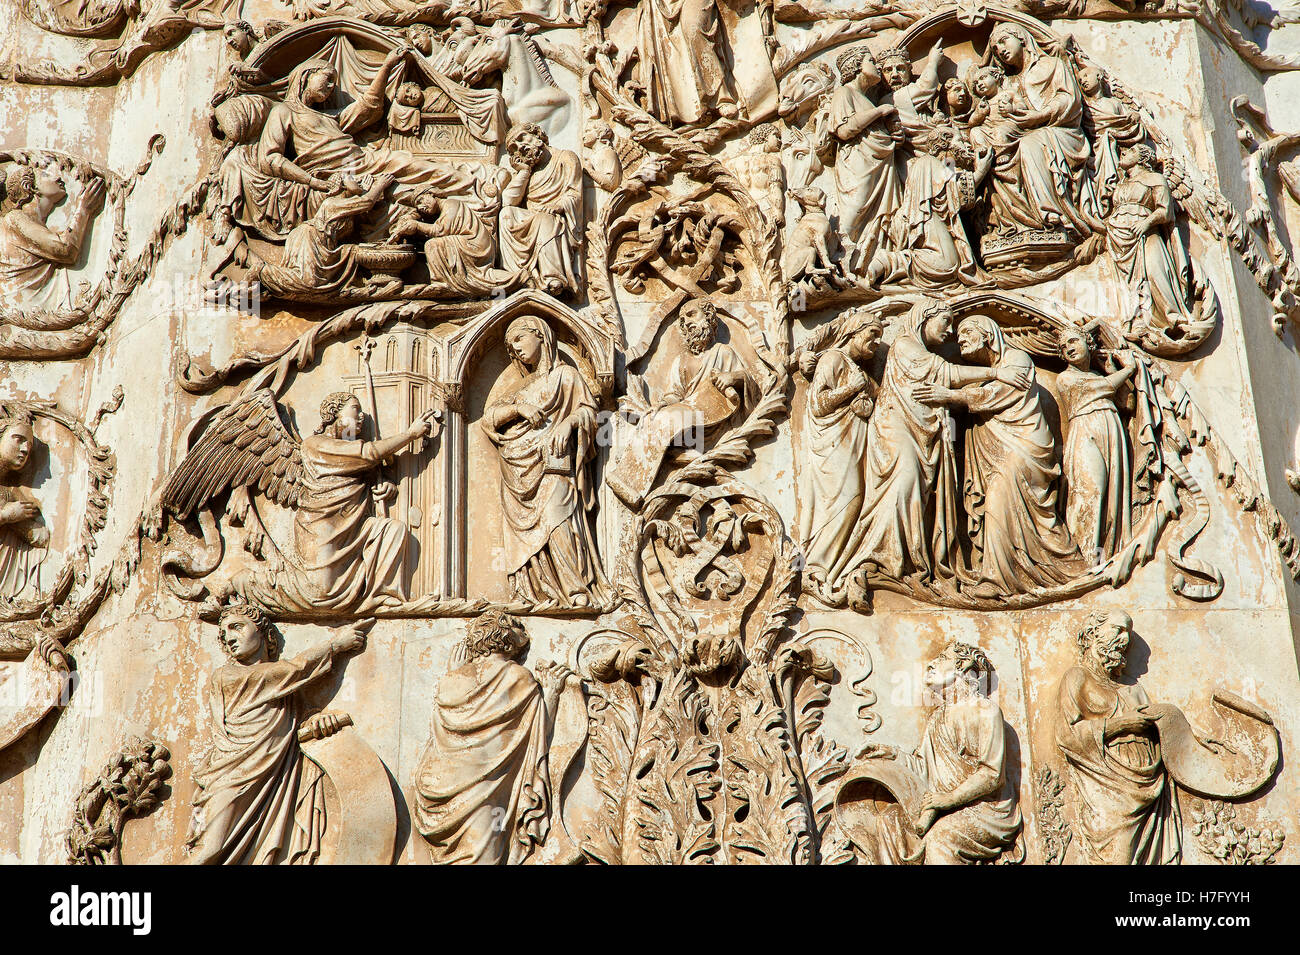 Bas-relief de la vie de la Vierge Marie par Maitani circa1310, façade gothique toscan, Cathédrale d'Orvieto, Ombrie, Italie Banque D'Images